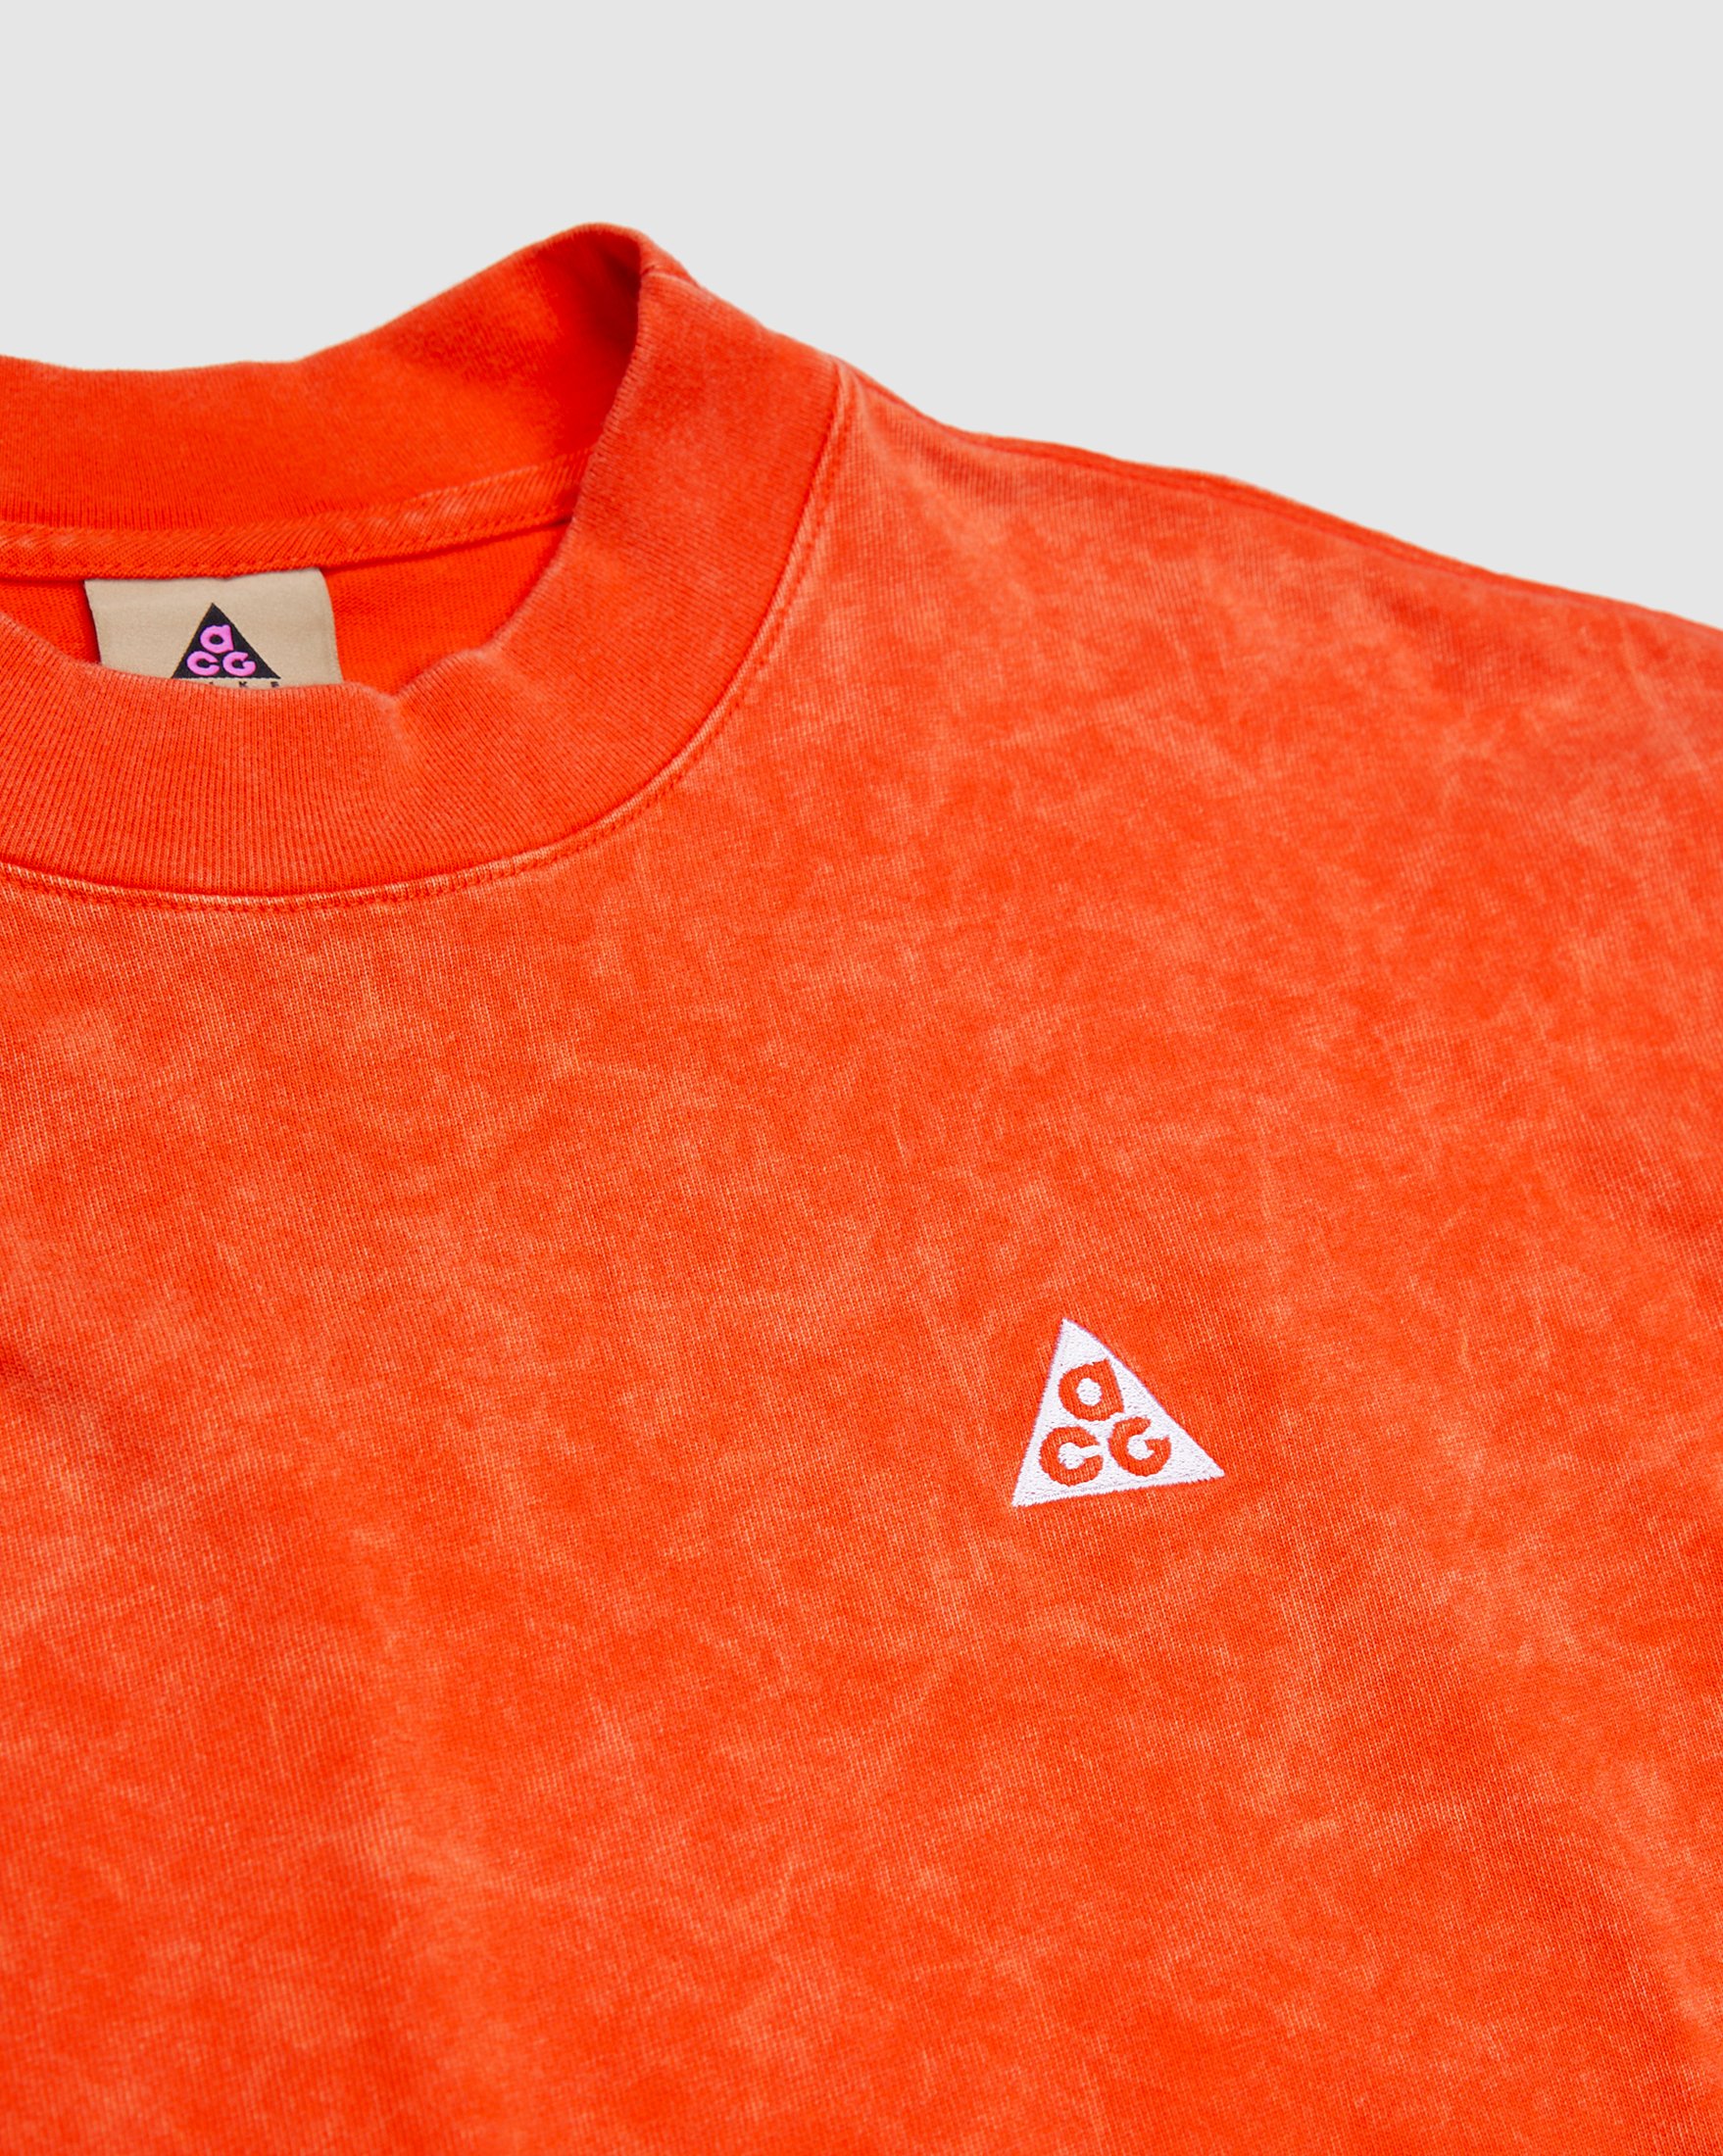 Nike ACG - Earth Men'S Longsleeve Orange - Clothing - Orange - Image 3